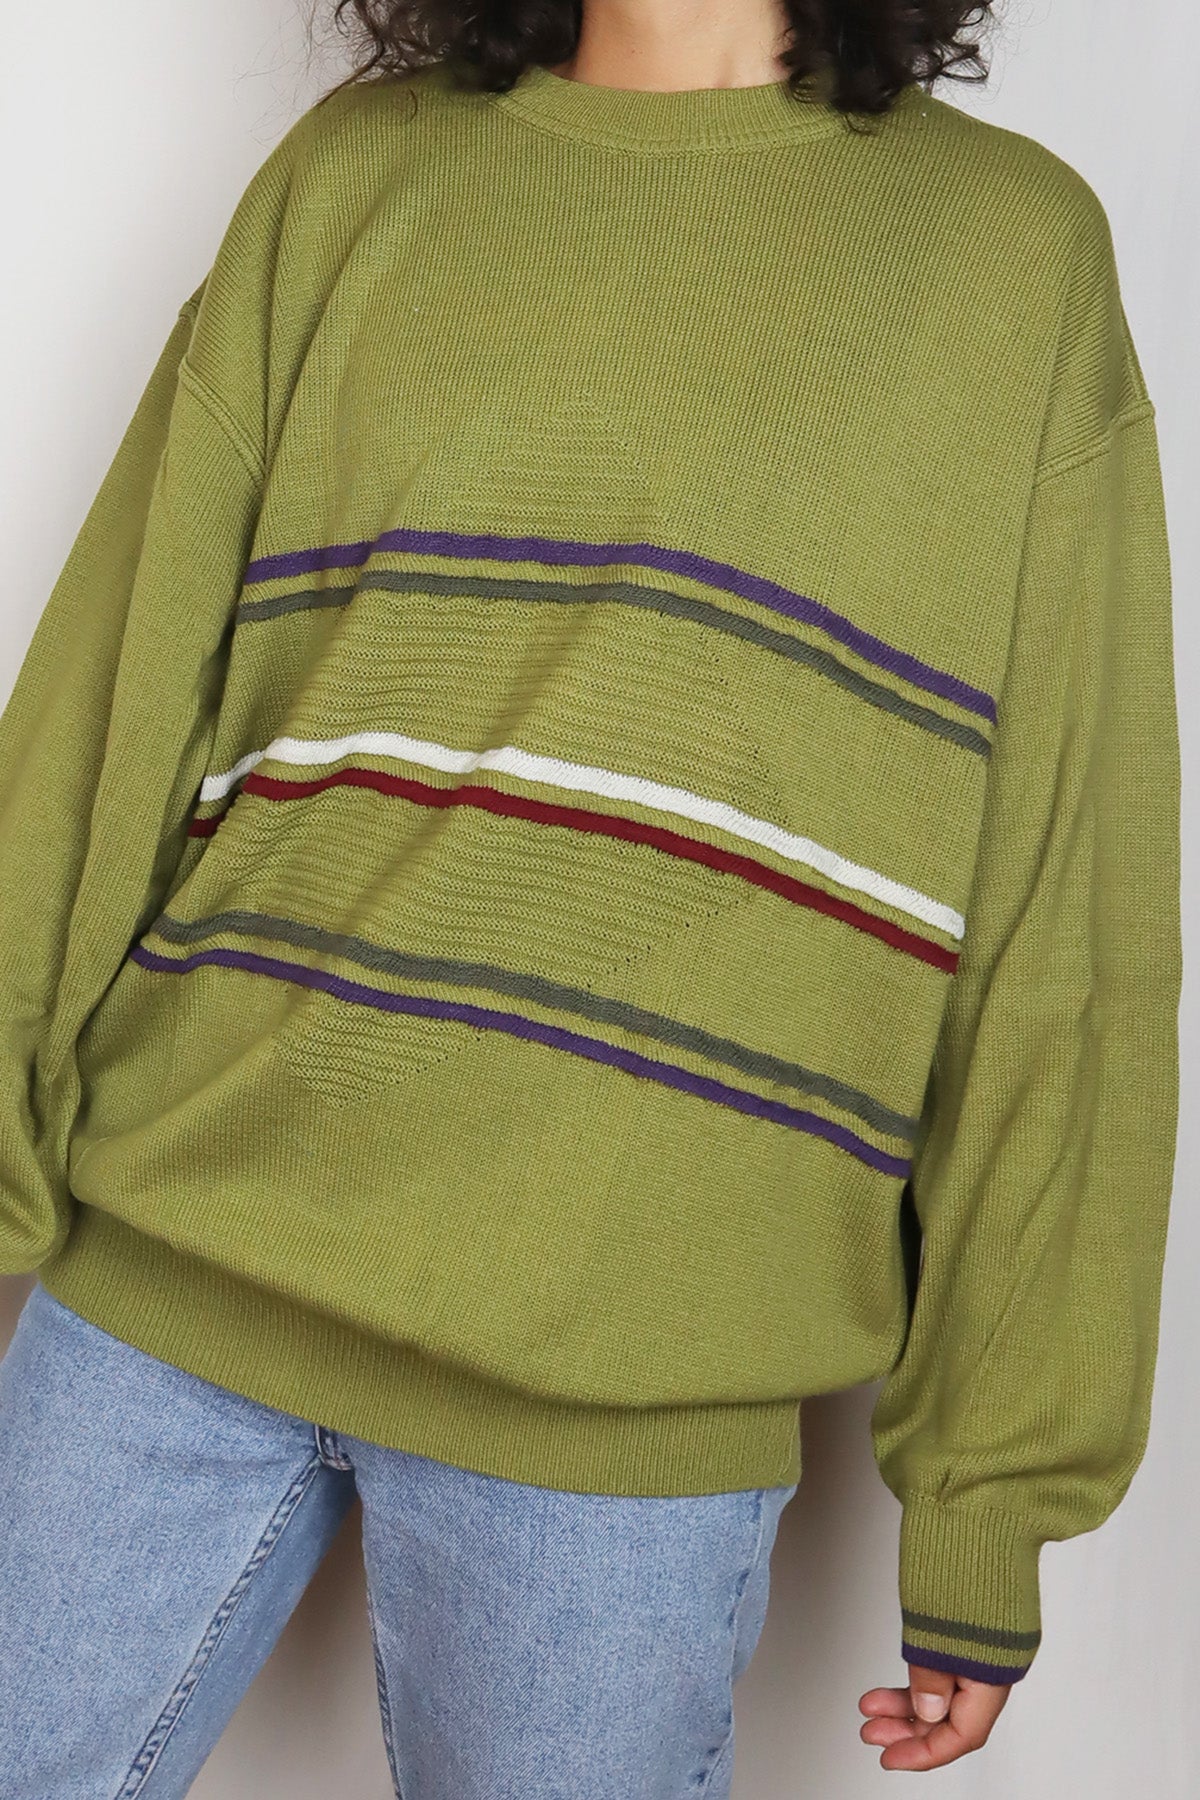 Unisex Pullover Vintage Kiwi Grün Streifen ( Gr. M/L )